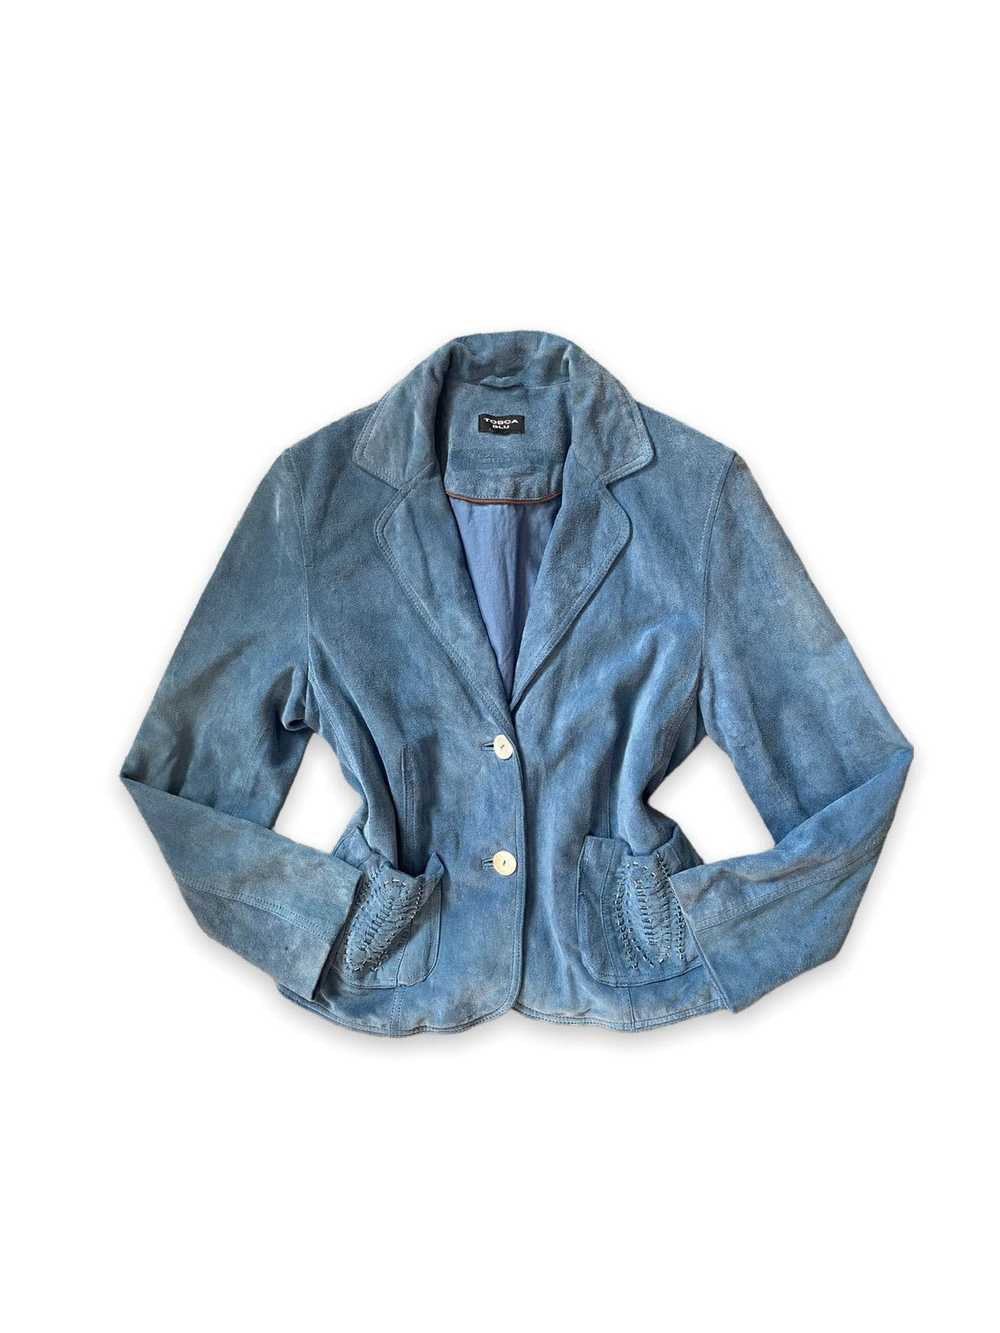 Vintage Tosca Blu blue 100% leather suede jacket … - image 1